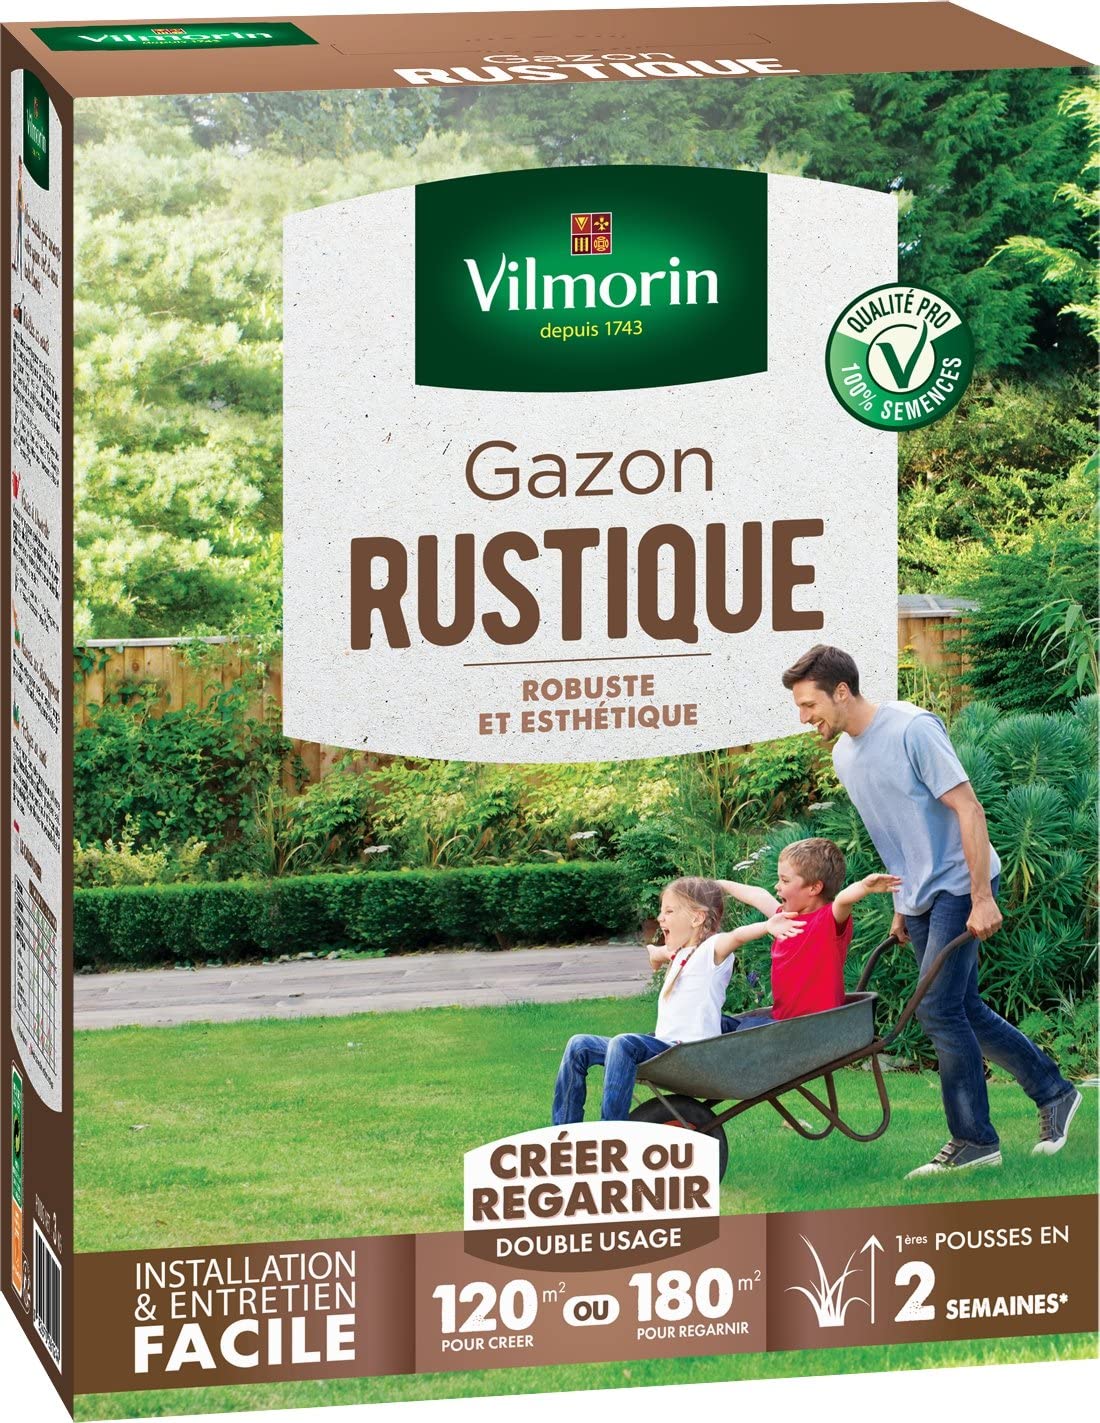 Gazon Rustique Vilmorin 4460415, Vert, 3 kg, 150 m2